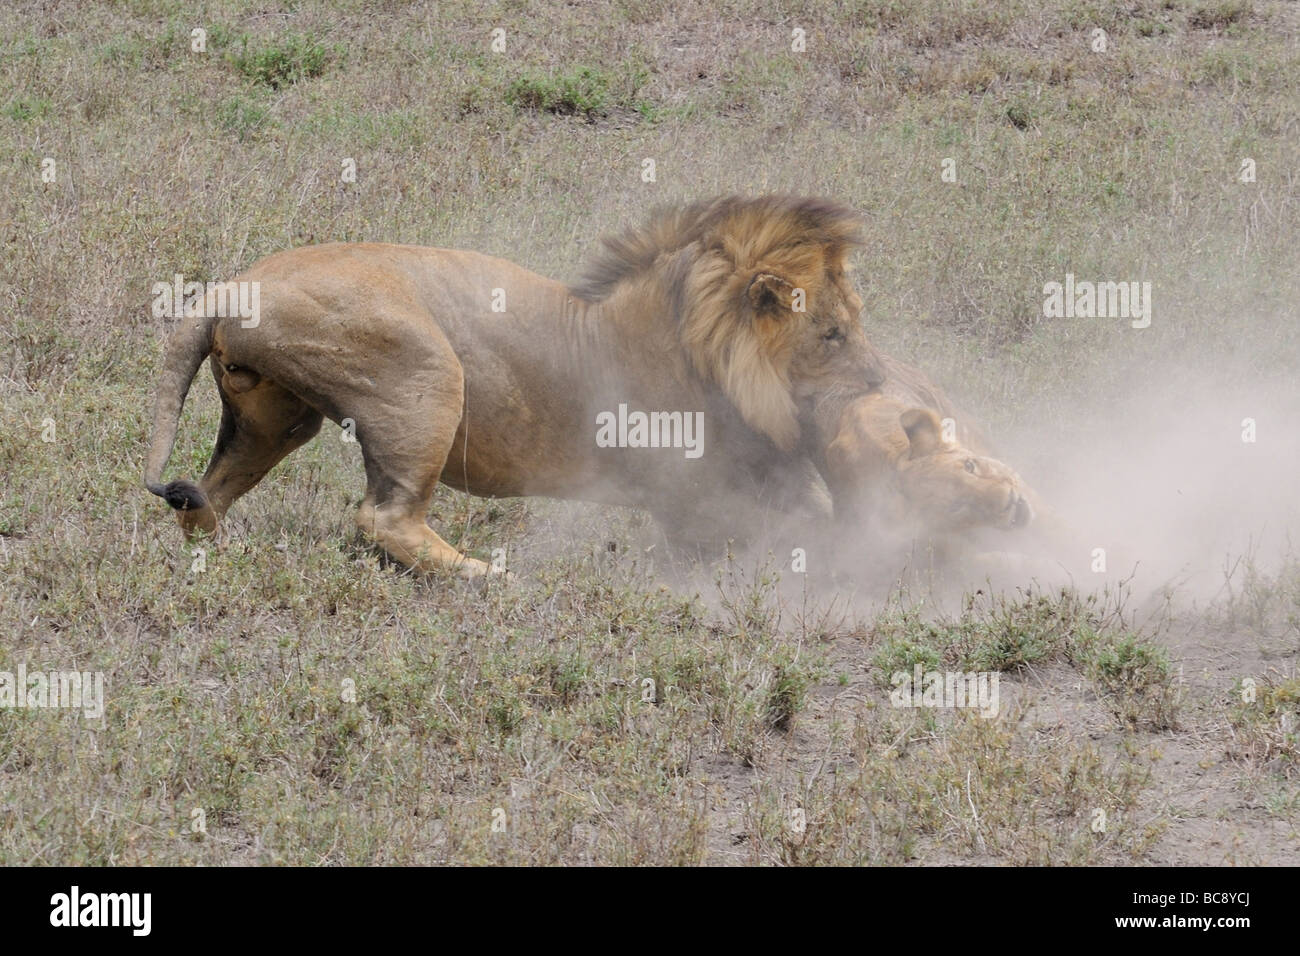 Stock Foto von einem großen männlichen Löwen angreifen und töten eine Cub, Ndutu, Tansania, Februar 2009. Stockfoto